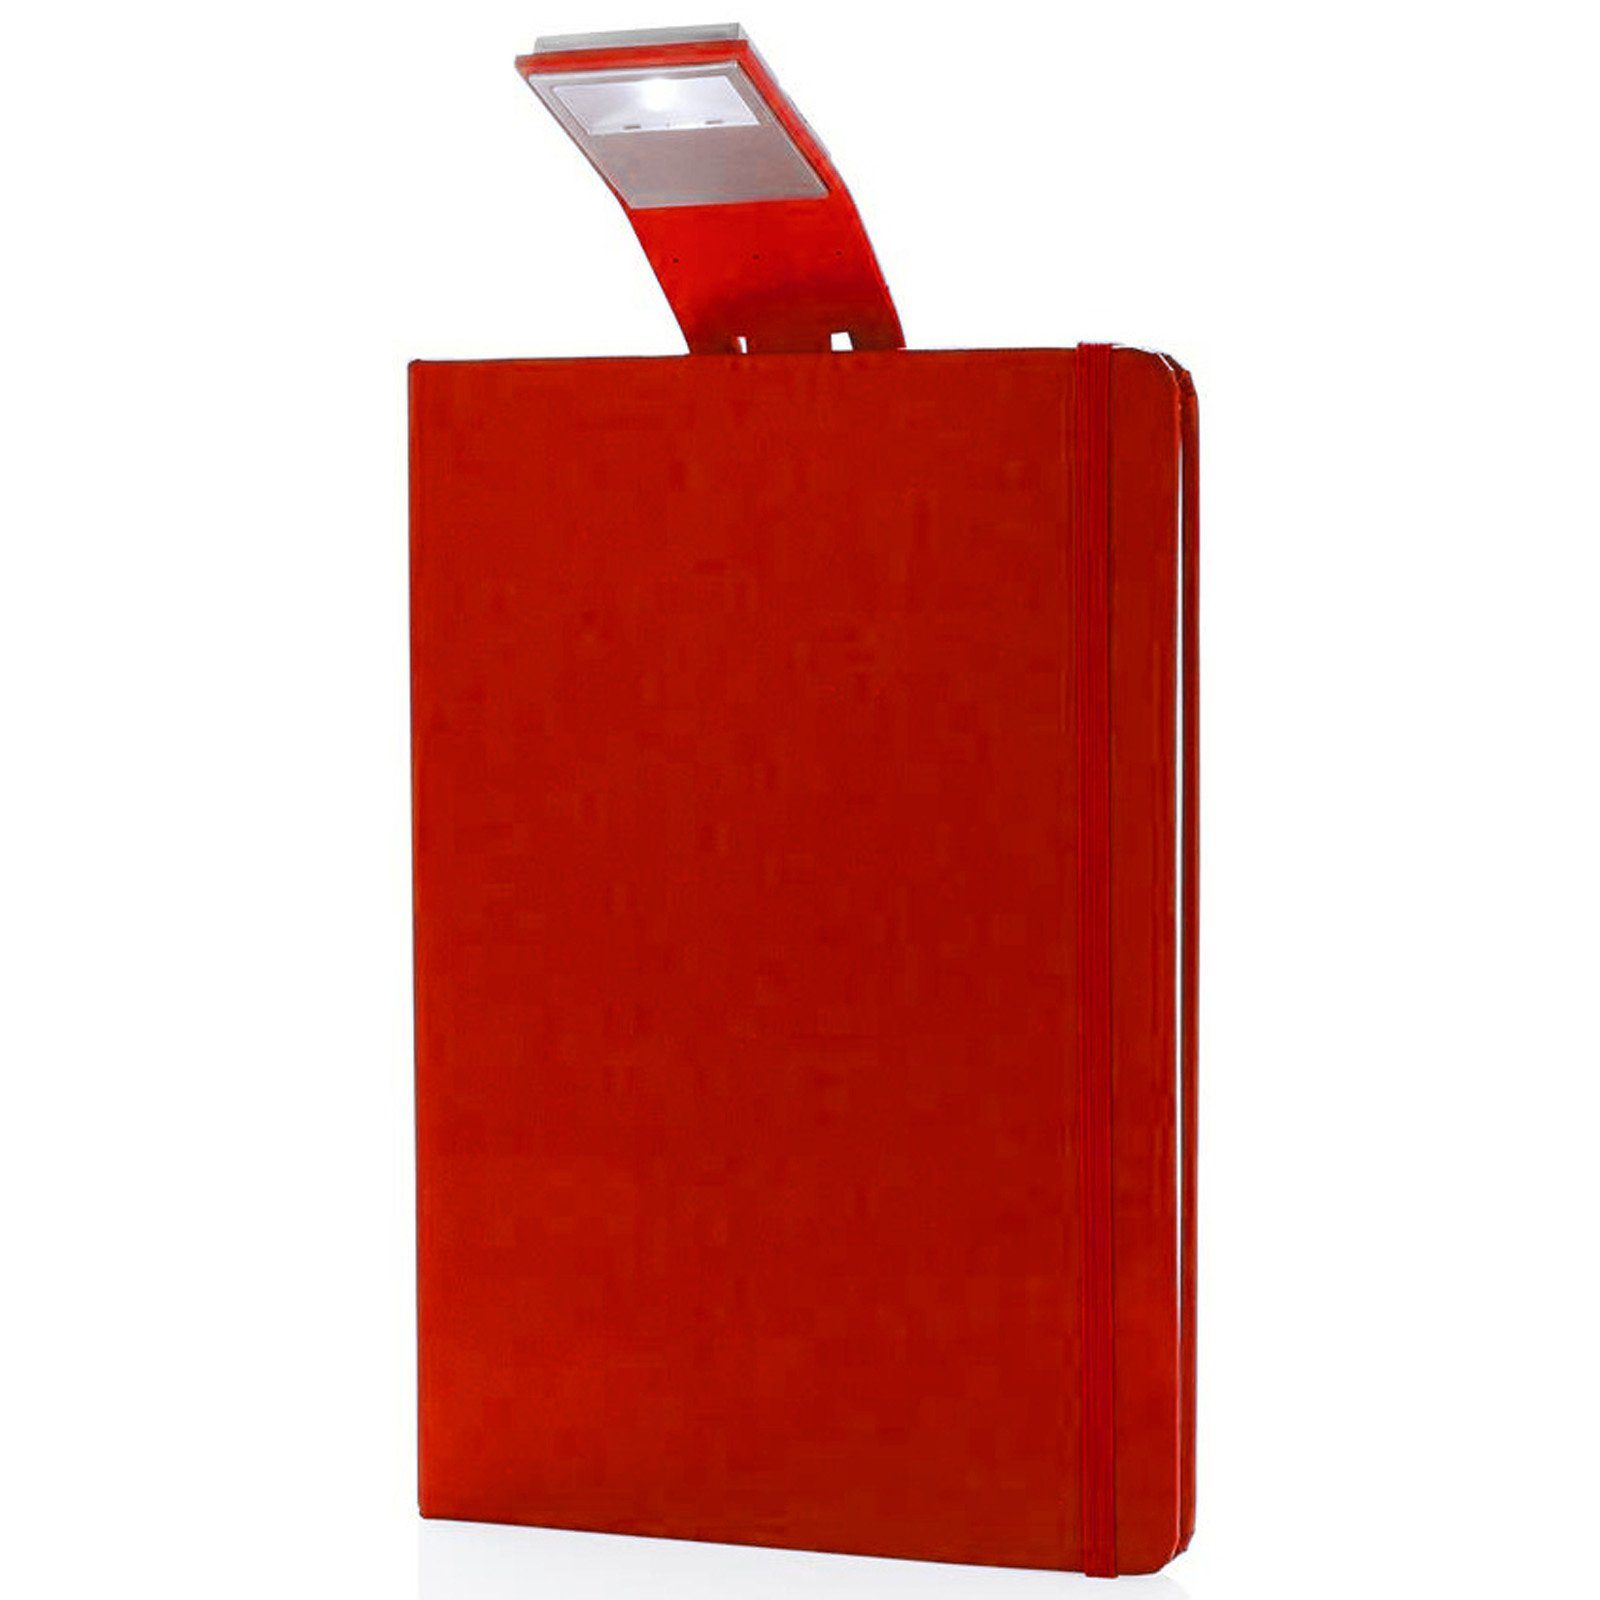 XD Collection Notizbuch Notizblock A5 mit Hardcover Leselampe 160 cremeweiße Seiten Liniert, mit LED Lesezeichen & Gummiband rot | Notizbücher